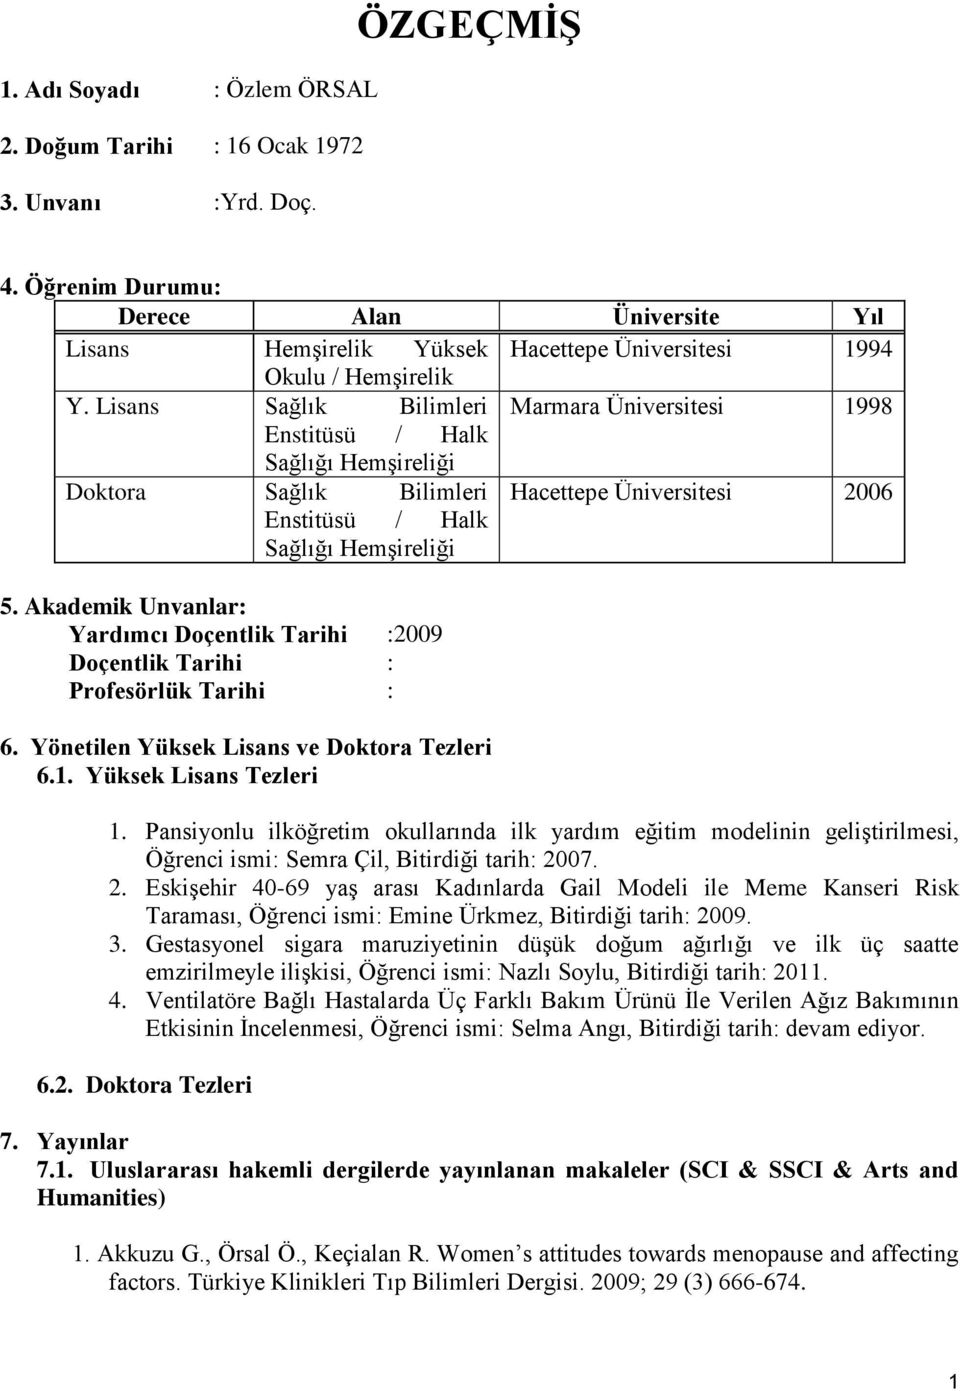 Lisans Sağlık Bilimleri Marmara Üniversitesi 1998 Enstitüsü / Halk Sağlığı Hemşireliği Doktora Sağlık Bilimleri Hacettepe Üniversitesi 2006 Enstitüsü / Halk Sağlığı Hemşireliği 5.